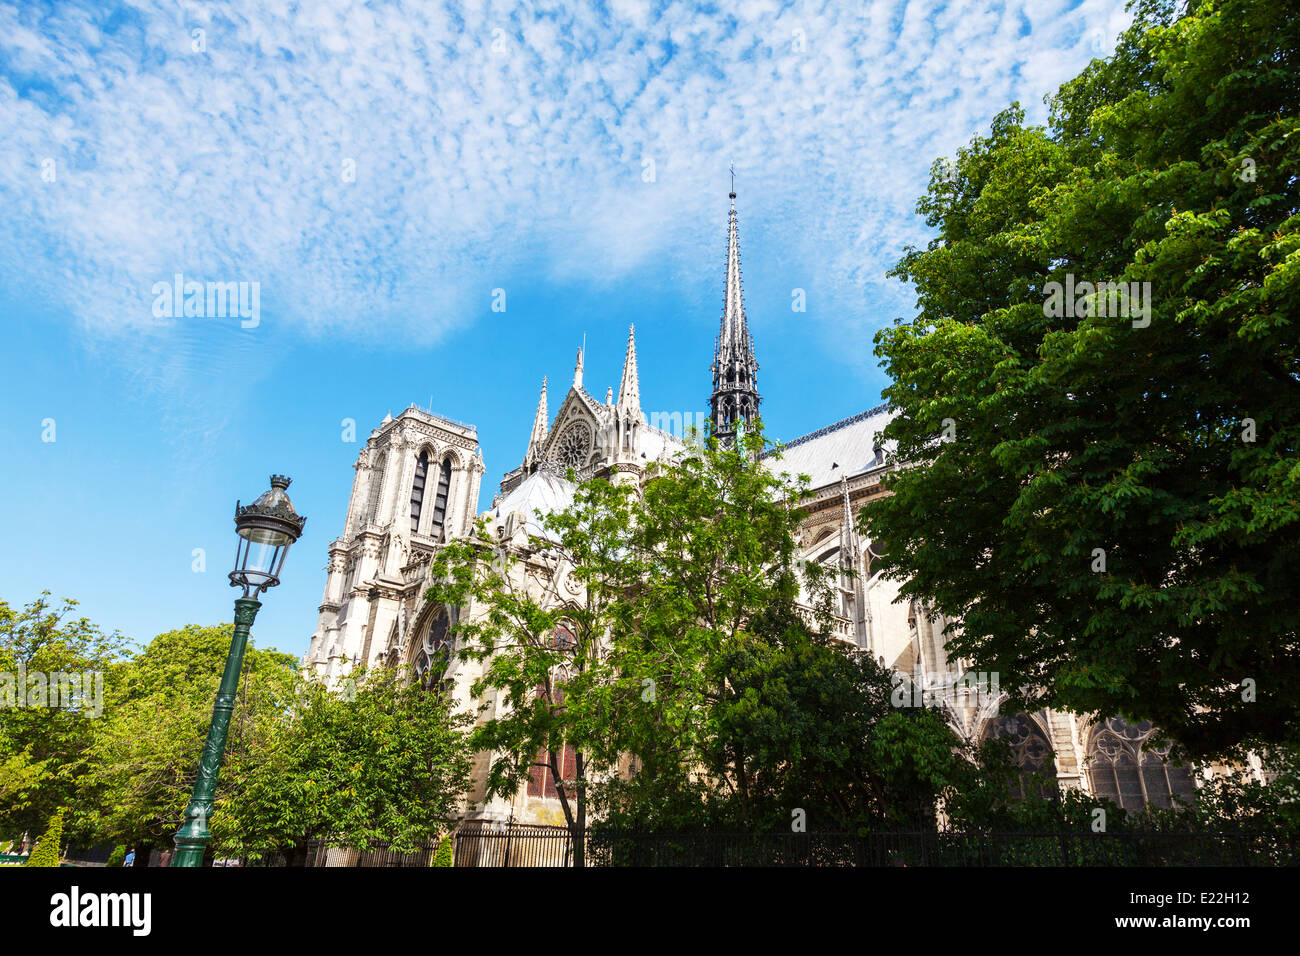 Notre Dame de Paris; La cathédrale Notre-Dame de Paris city europe european destination Stock Photo